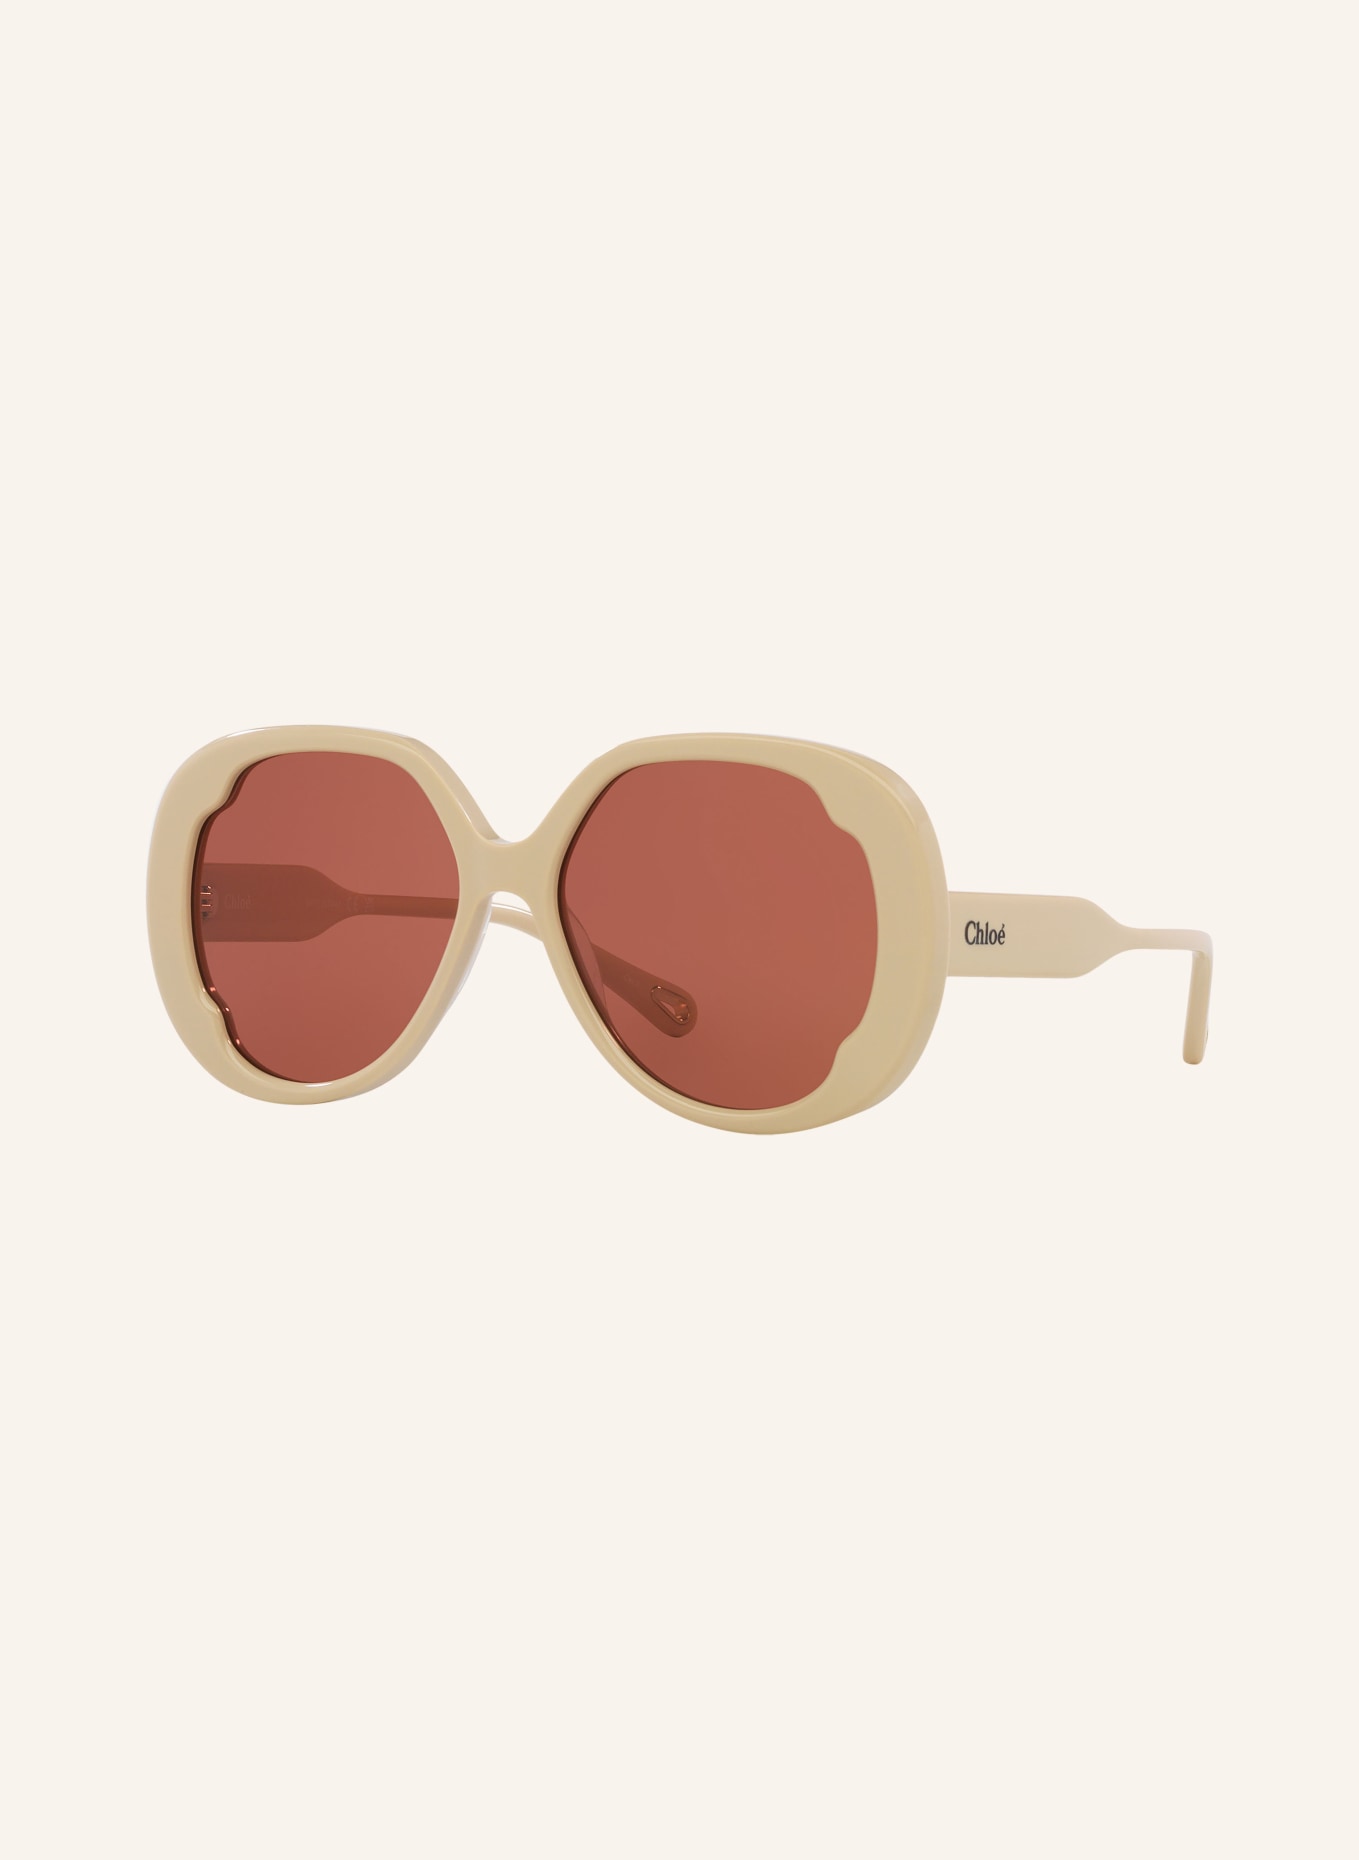 Chloé Sunglasses CH0195S, Color: 3100D1 - LIGHT BROWN/ BROWN (Image 1)